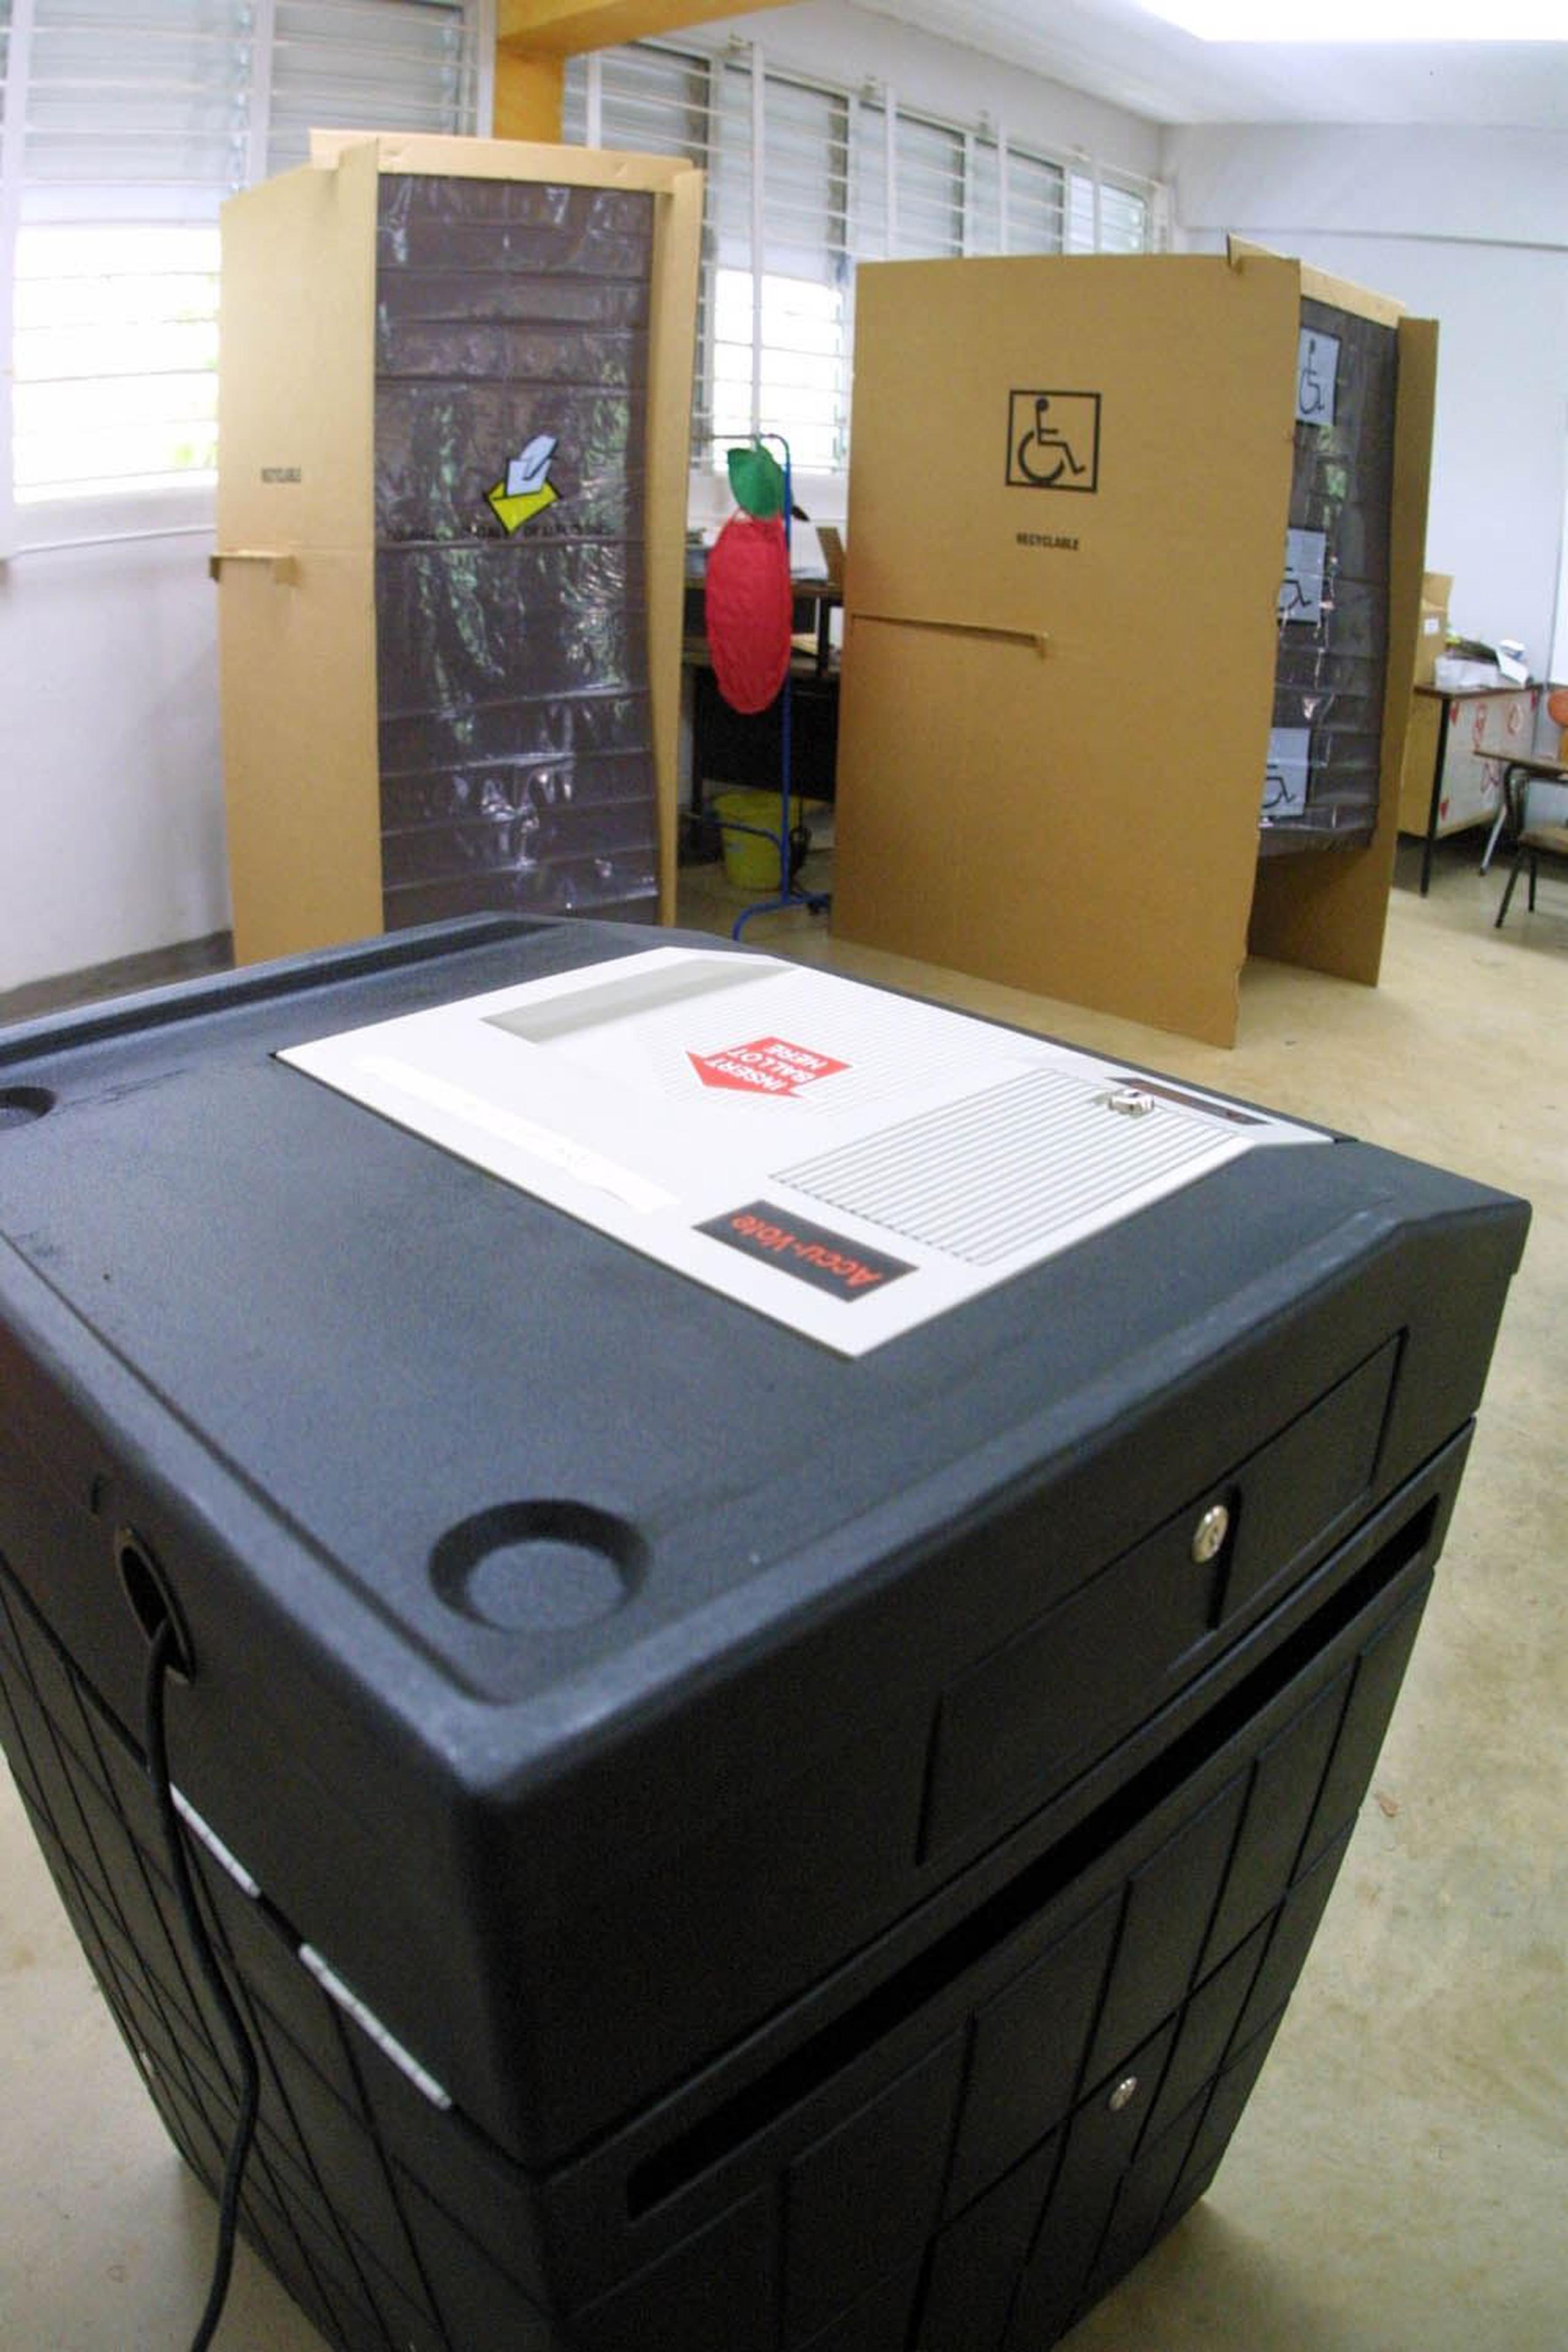 Con el nuevo proceso de escrutinio electrónico, el elector debe realizar un trámite en una pantalla para que la urna electrónica acepte la papeleta. (Archivo / GFR Media)